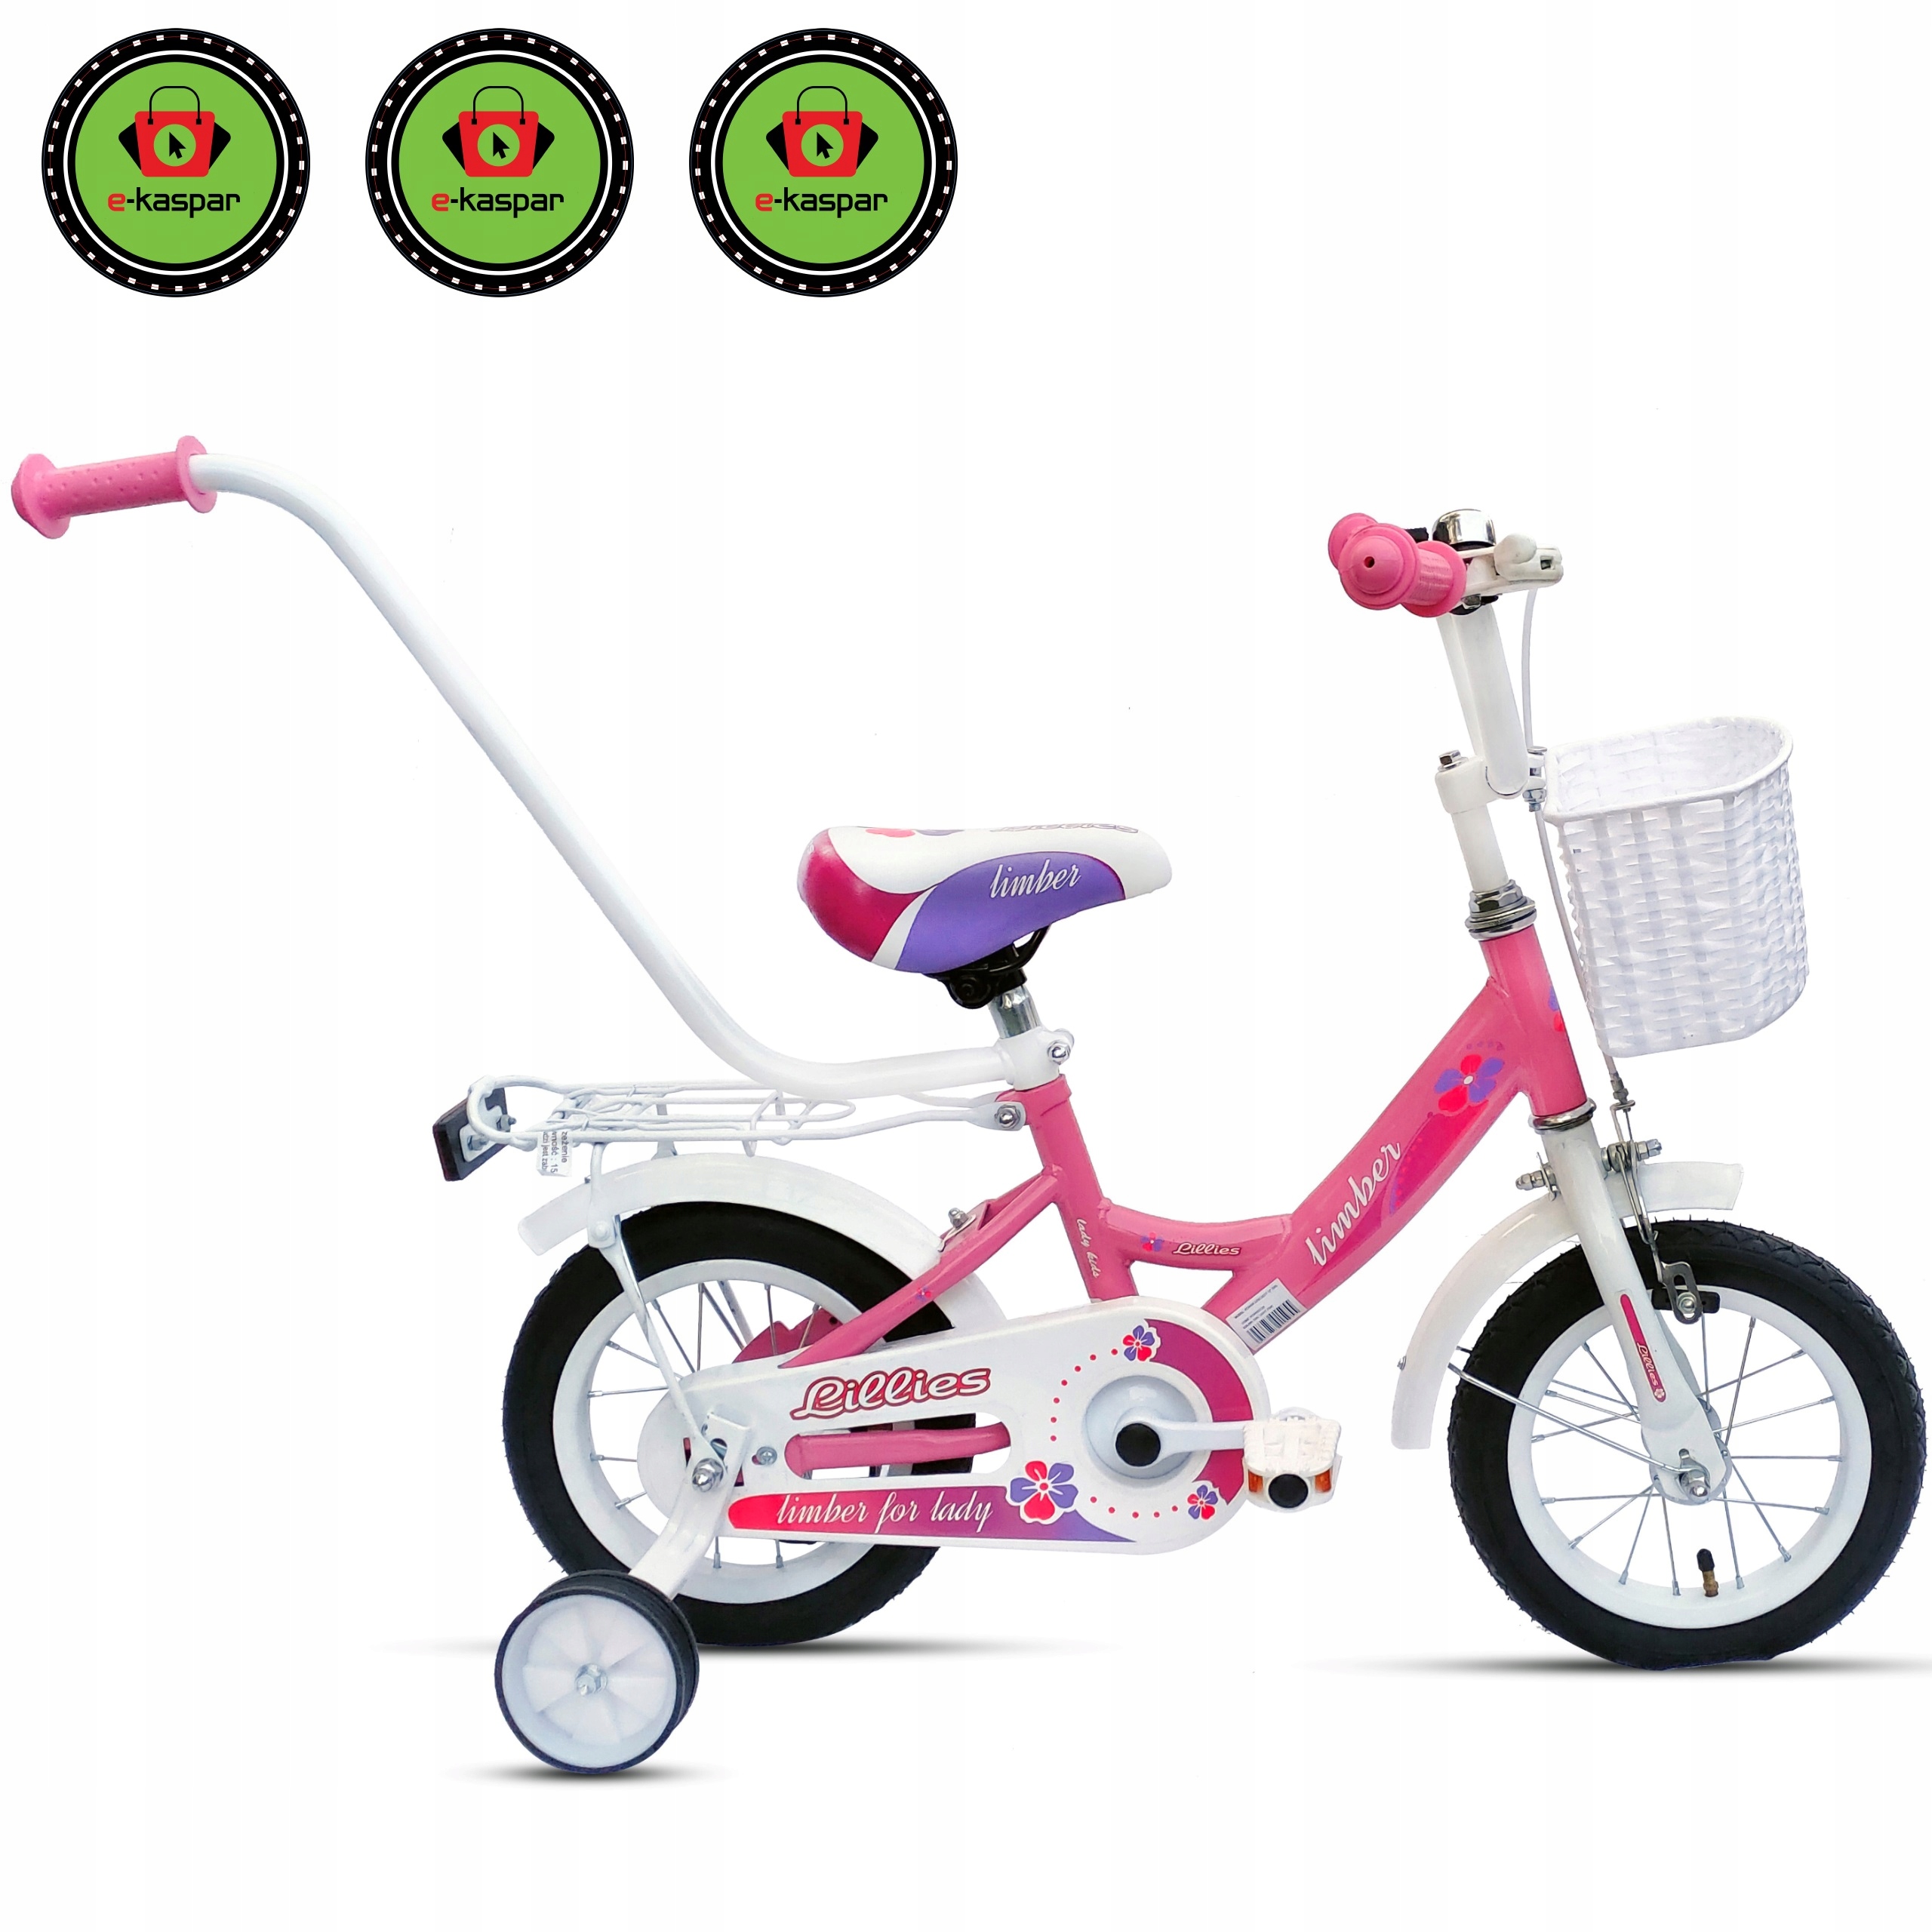 Велосипед 12 дюймов на какой возраст. BMX 12 дюймов. Велосипед 12 дюймов для девочки. Велосипед 12 дюймов с ручкой. Велосипед розовый для девочки.